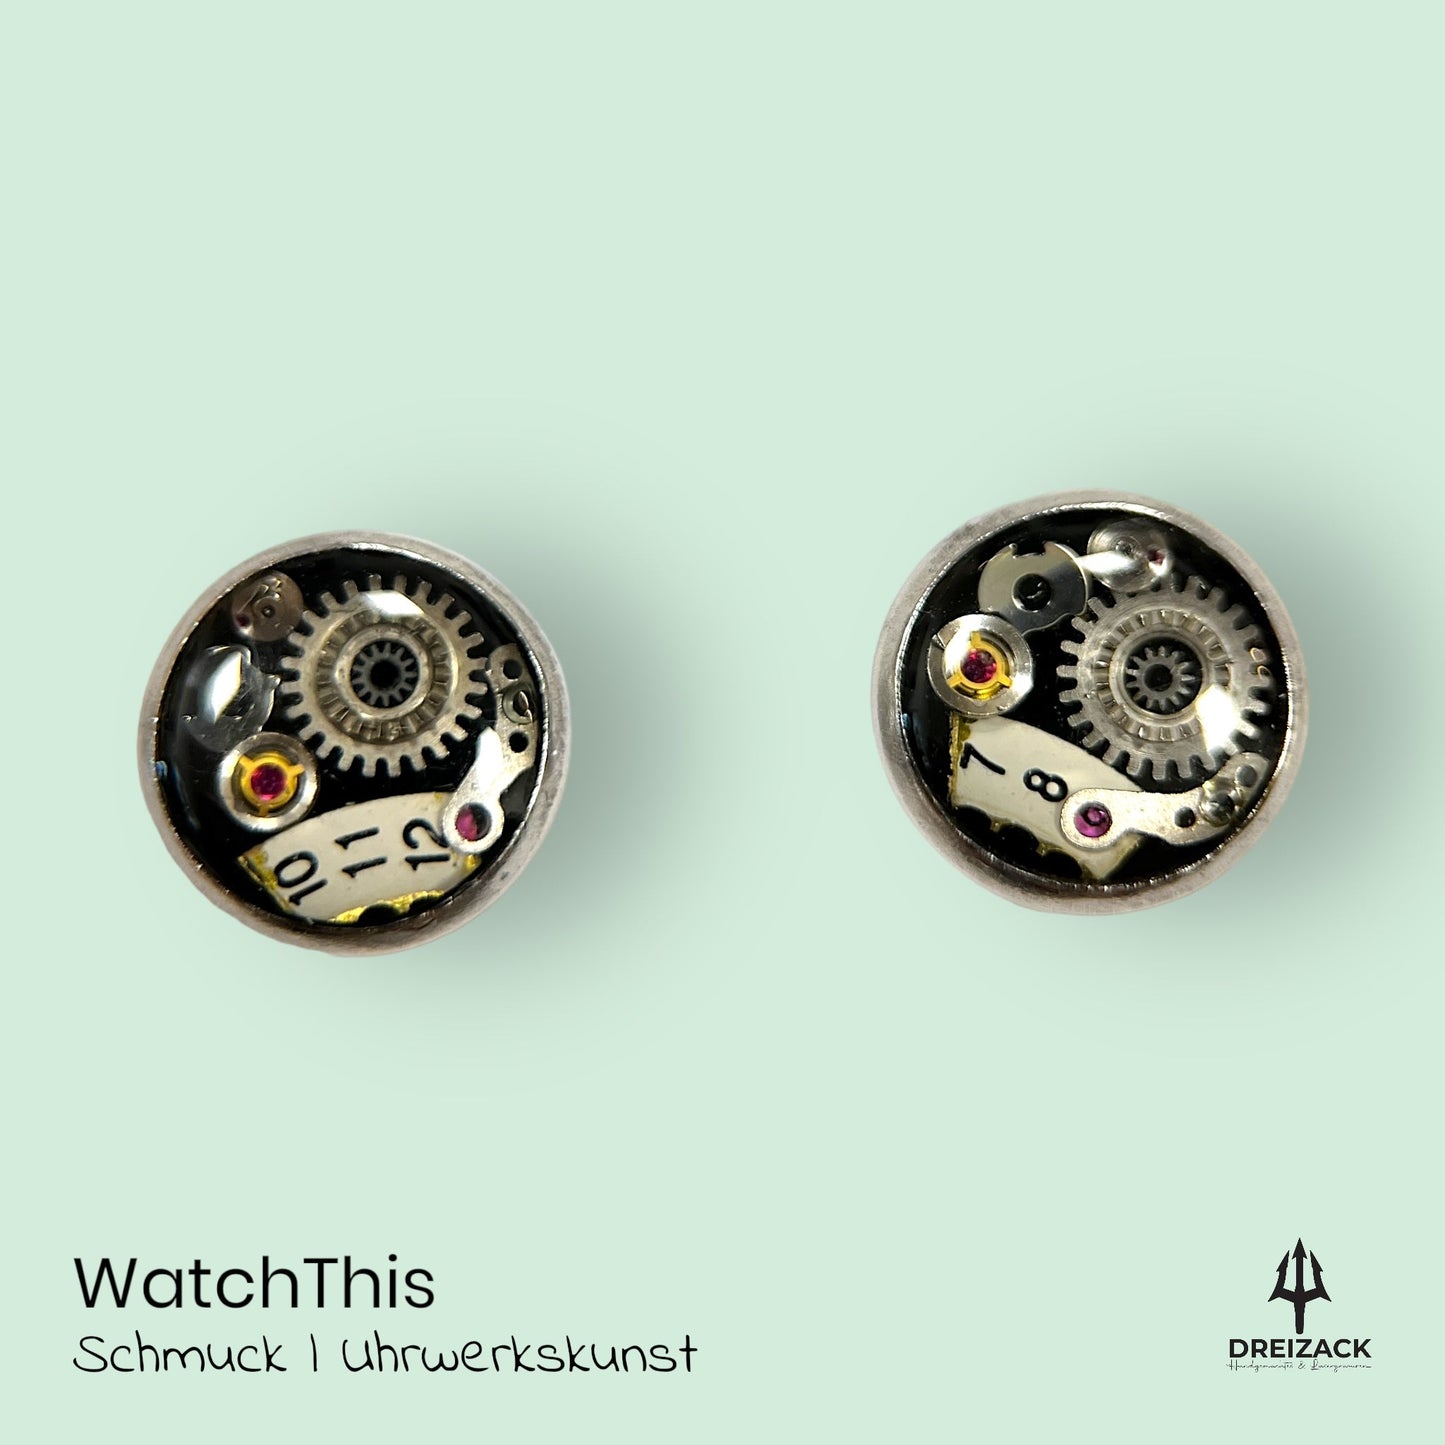 Ohrstecker von WatchThis - Zeitlose Eleganz aus Uhrwerken 8mm | Rhea Schmuck WatchThis oesterreich handgemachte geschenke in wien